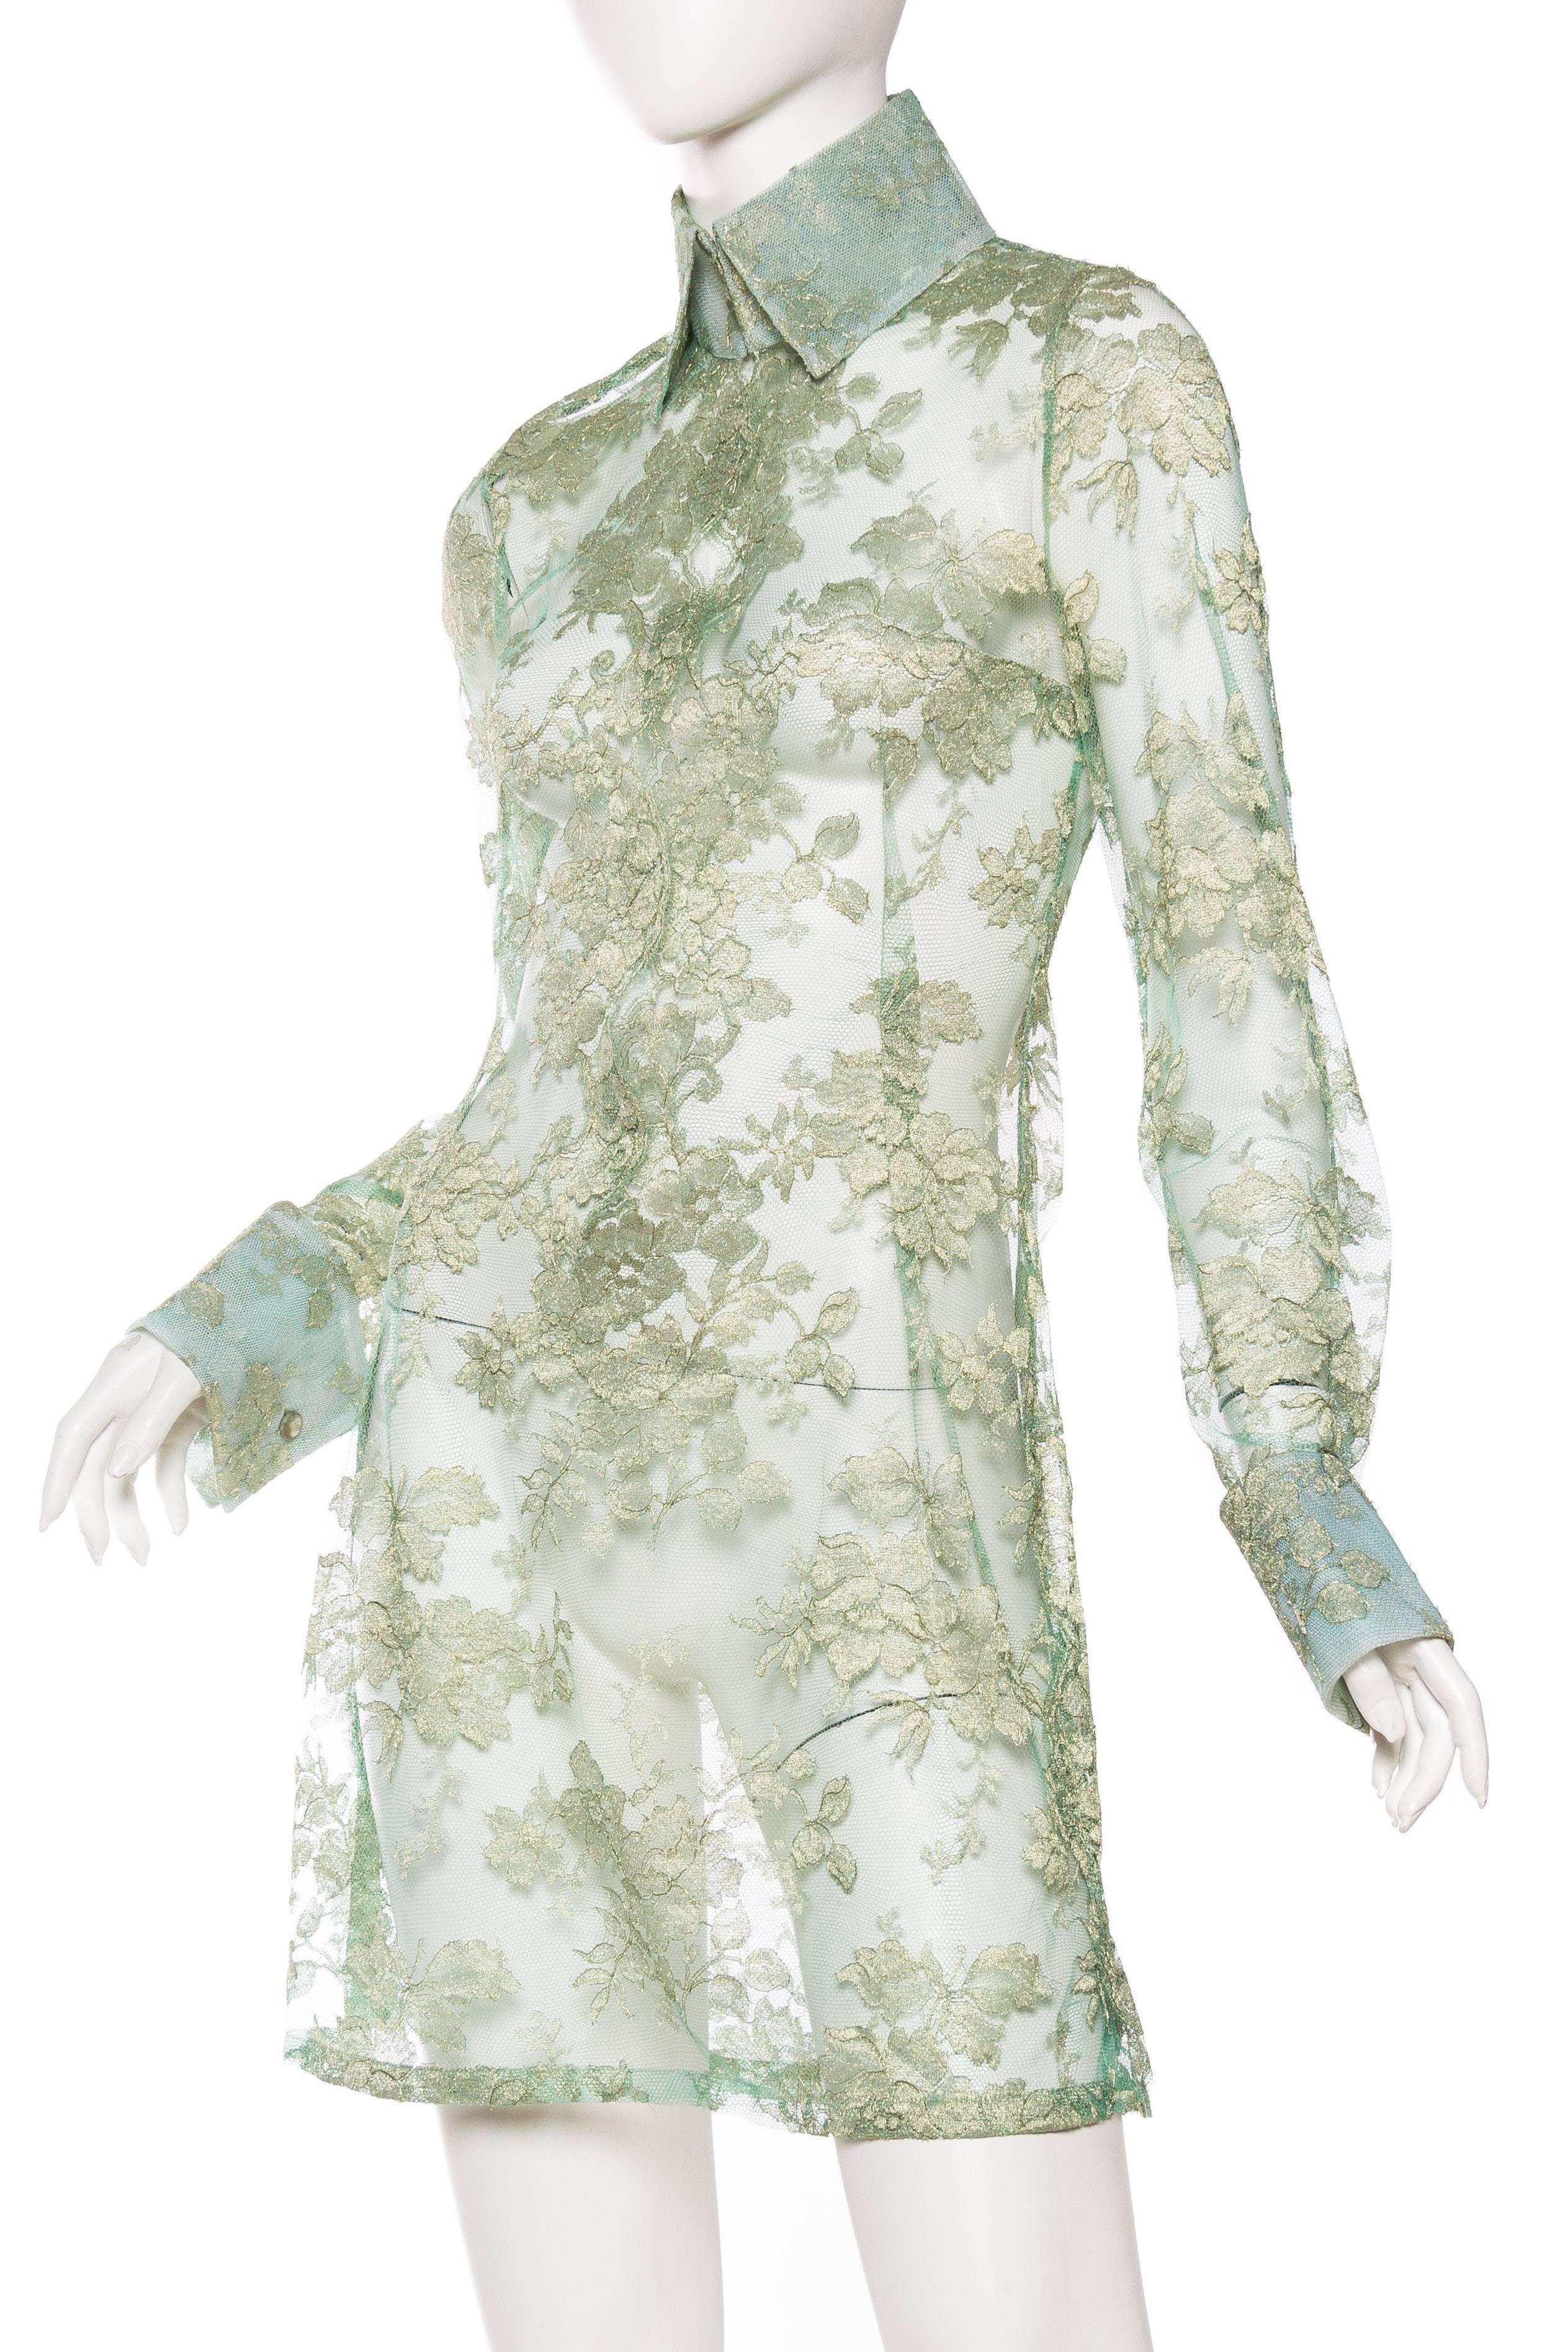 Women's 1990S DOLCE & GABBANA Mint Green Sheer Silk Lurex Chantilly Lace Shirt Dress